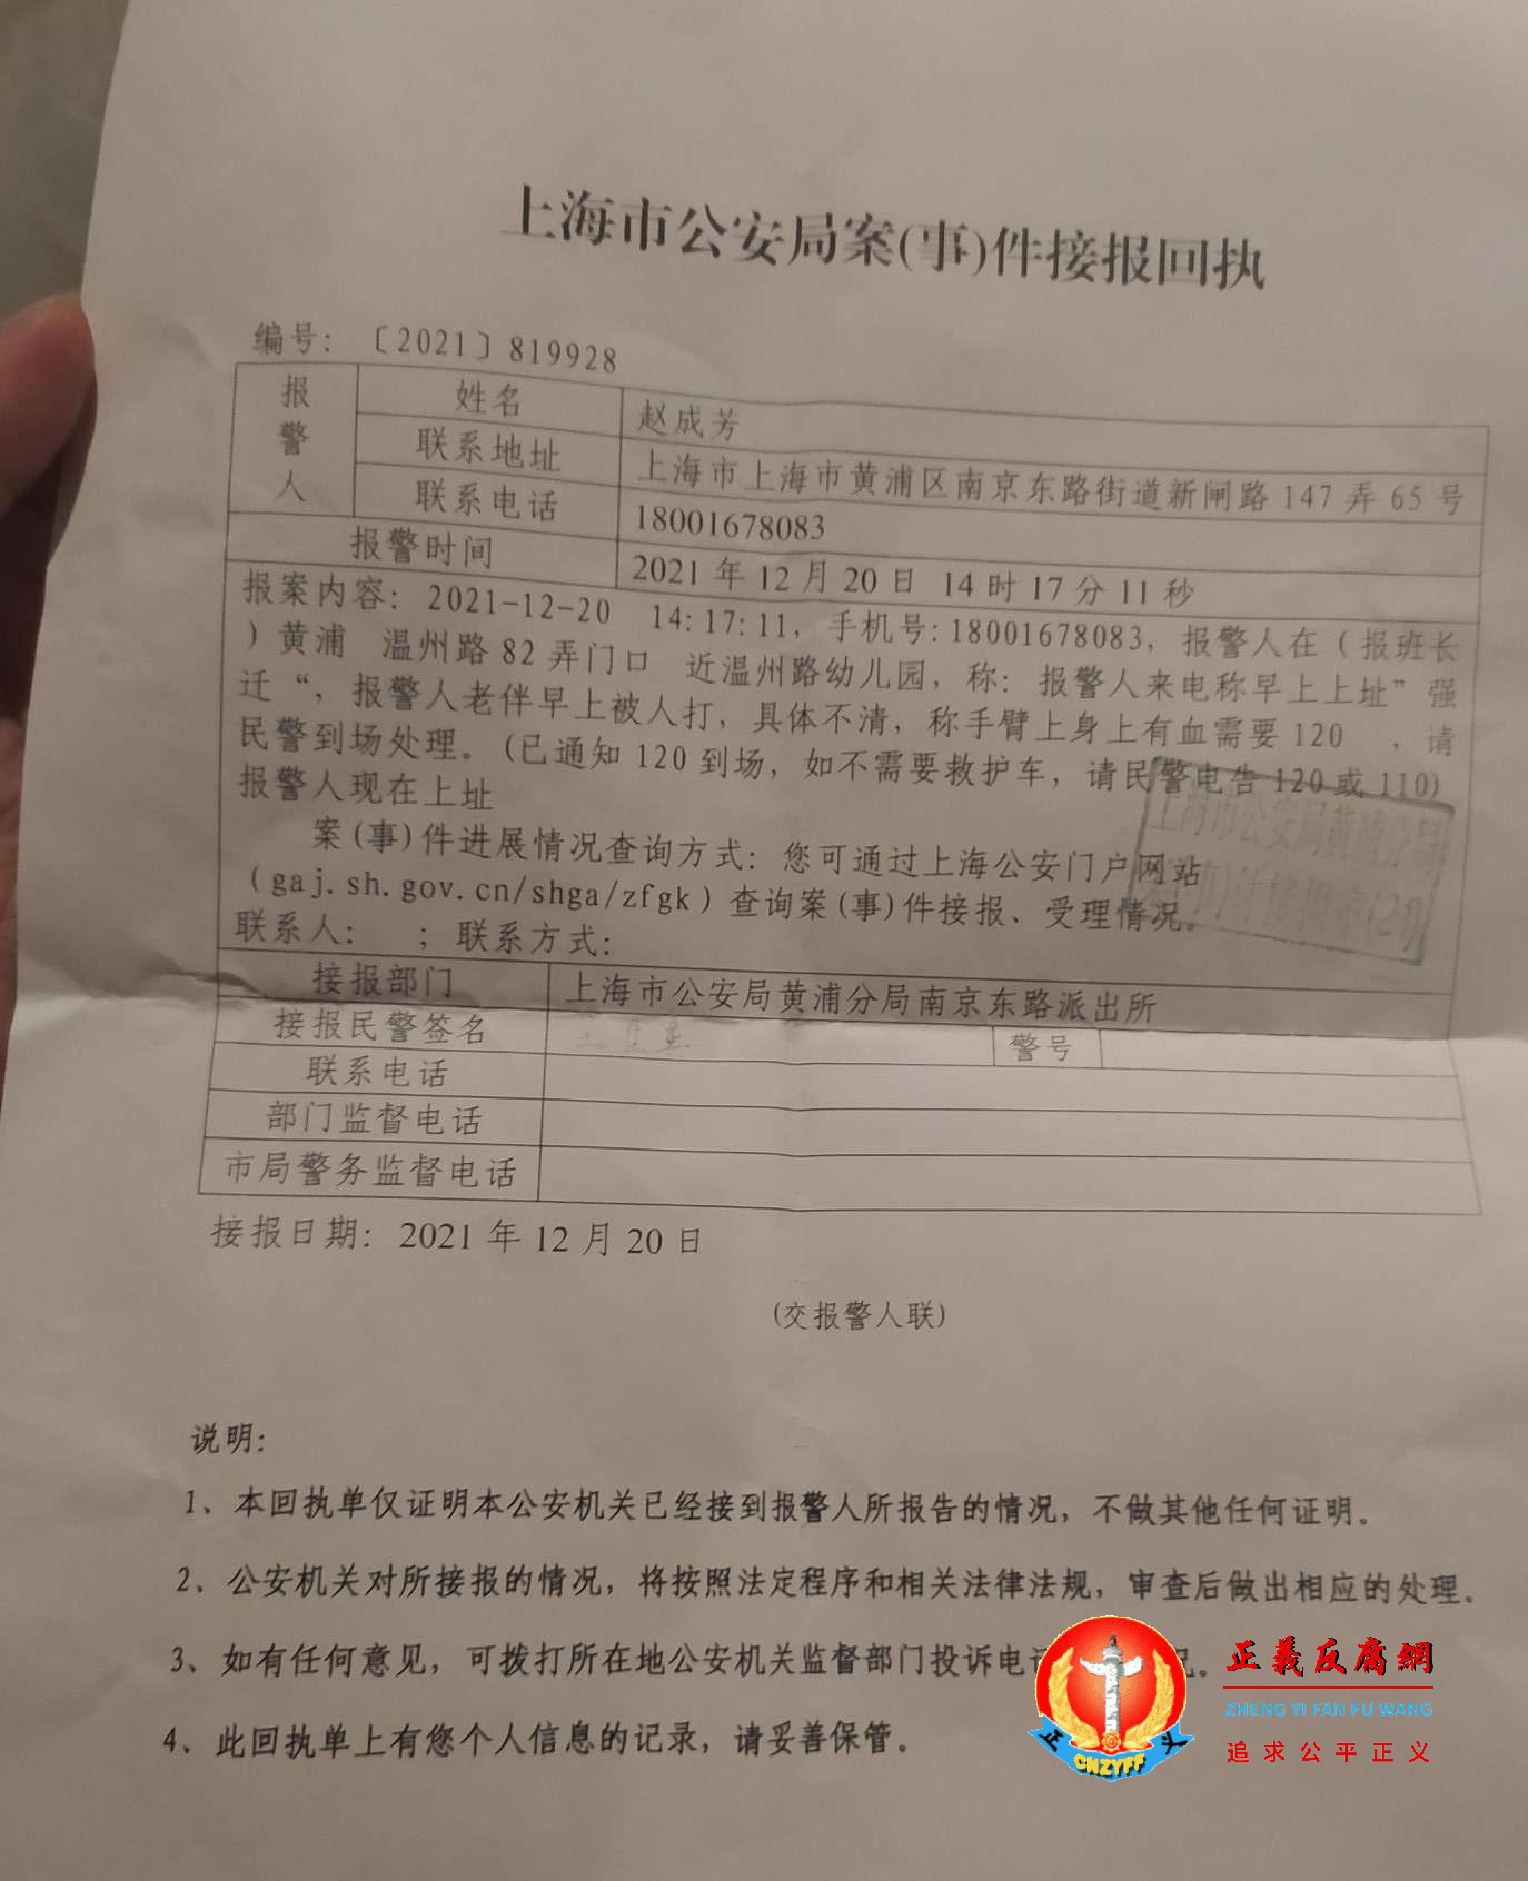 上海拆迁户赵成芳向警方报案回执单。.png